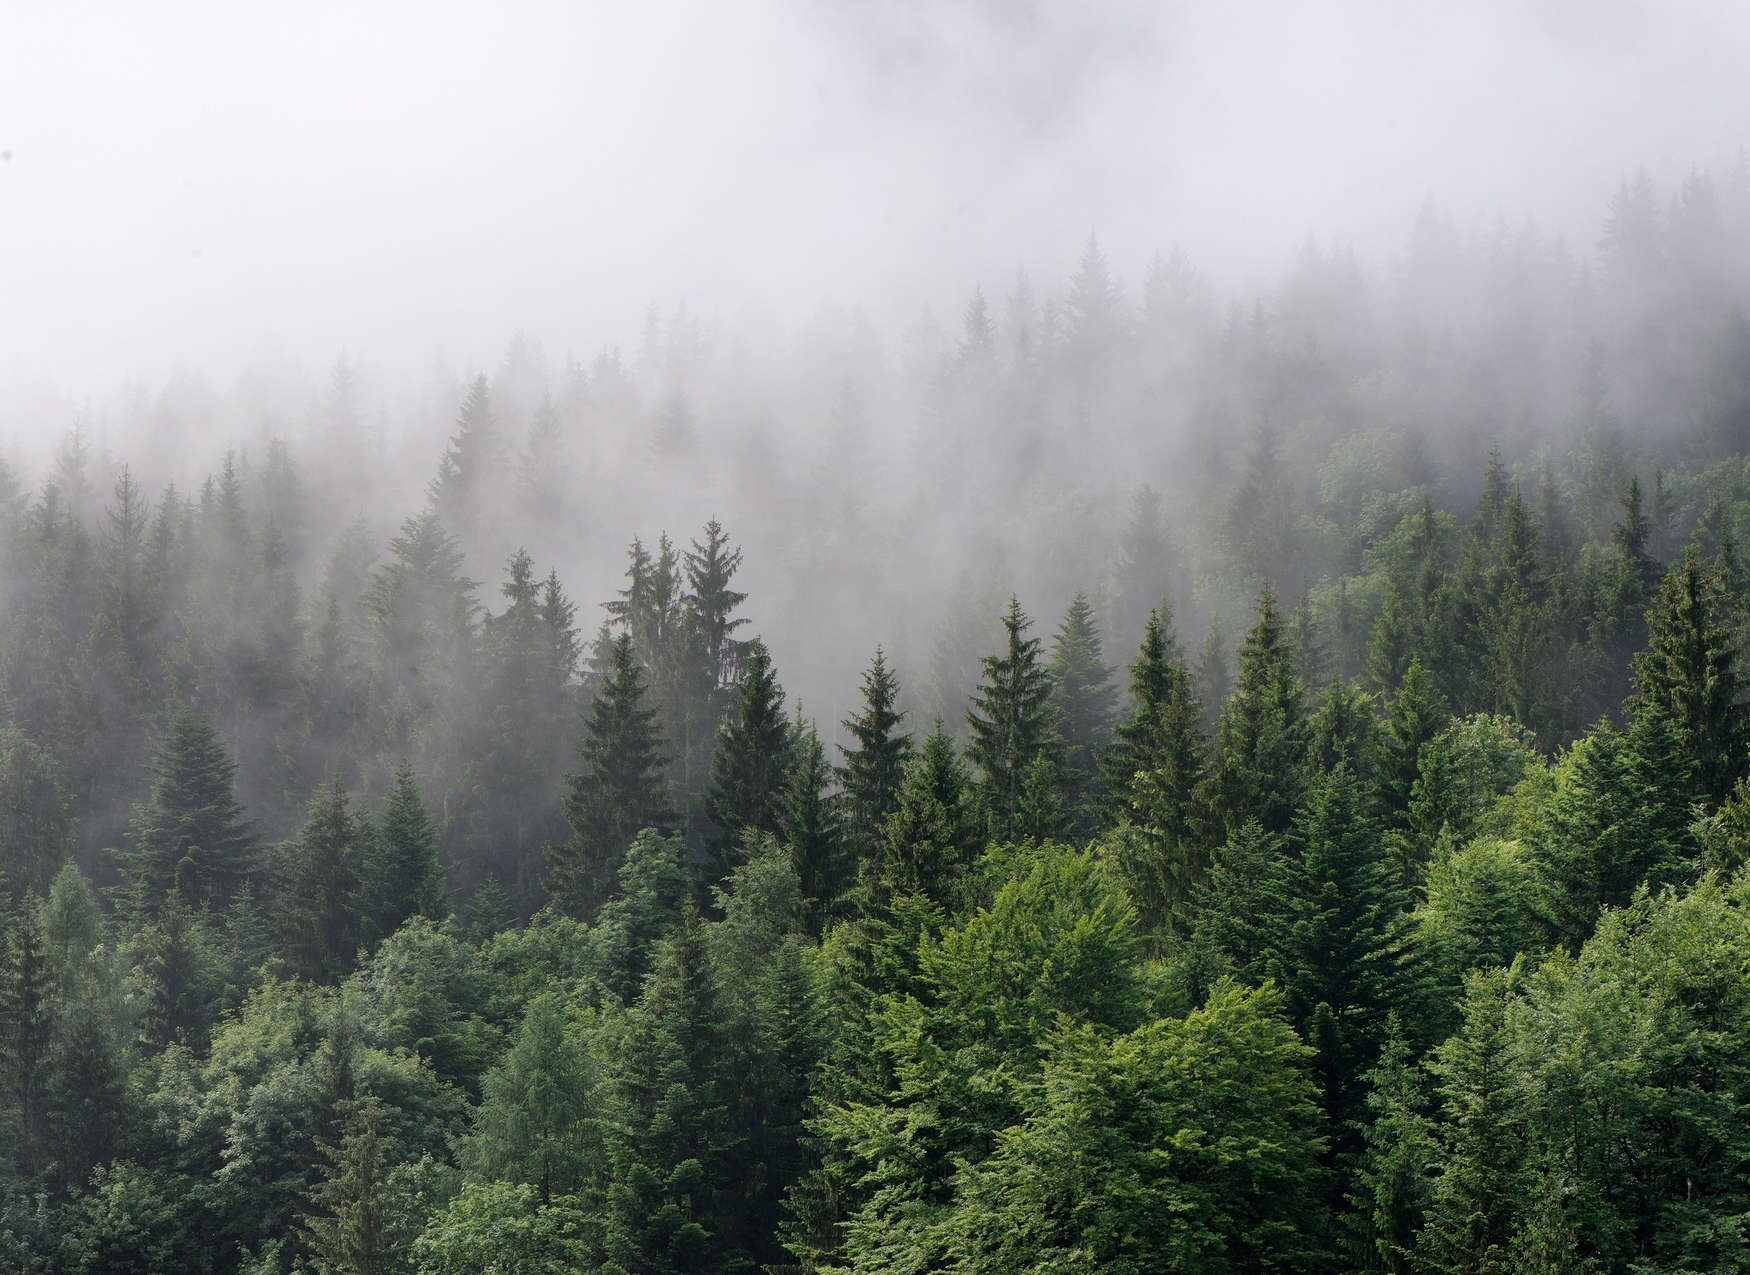             Wald von oben an einem nebeligen Tag – Grün, Weiß
        